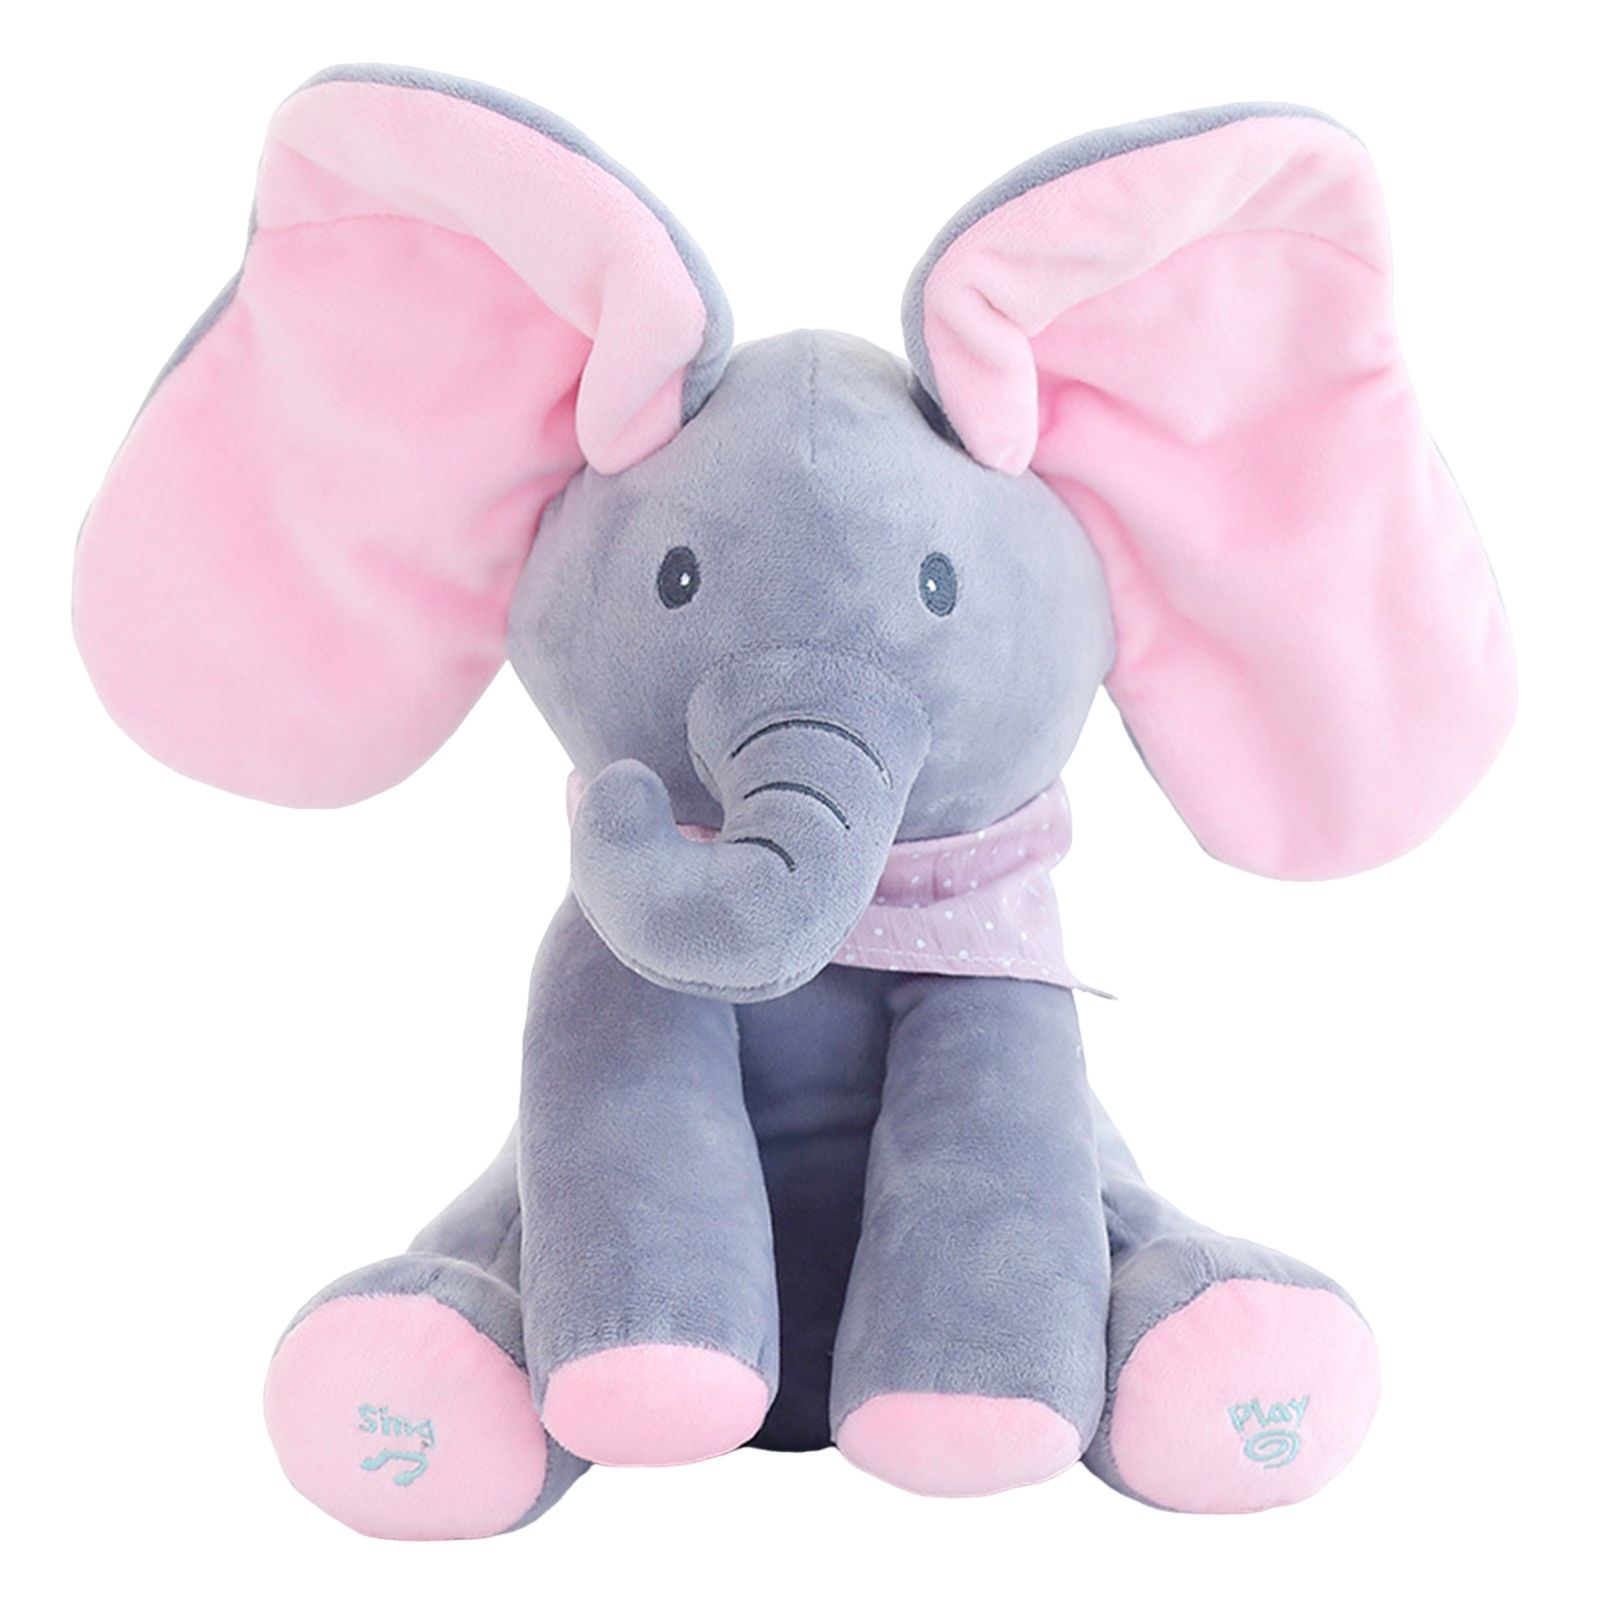 Плюшевый слоник. Слоненок Элефант игрушка. Интерактивная игрушка слон Дамбо. Интерактивная игрушка слон Лолли,. Слон плюшевый мягкая игрушка.